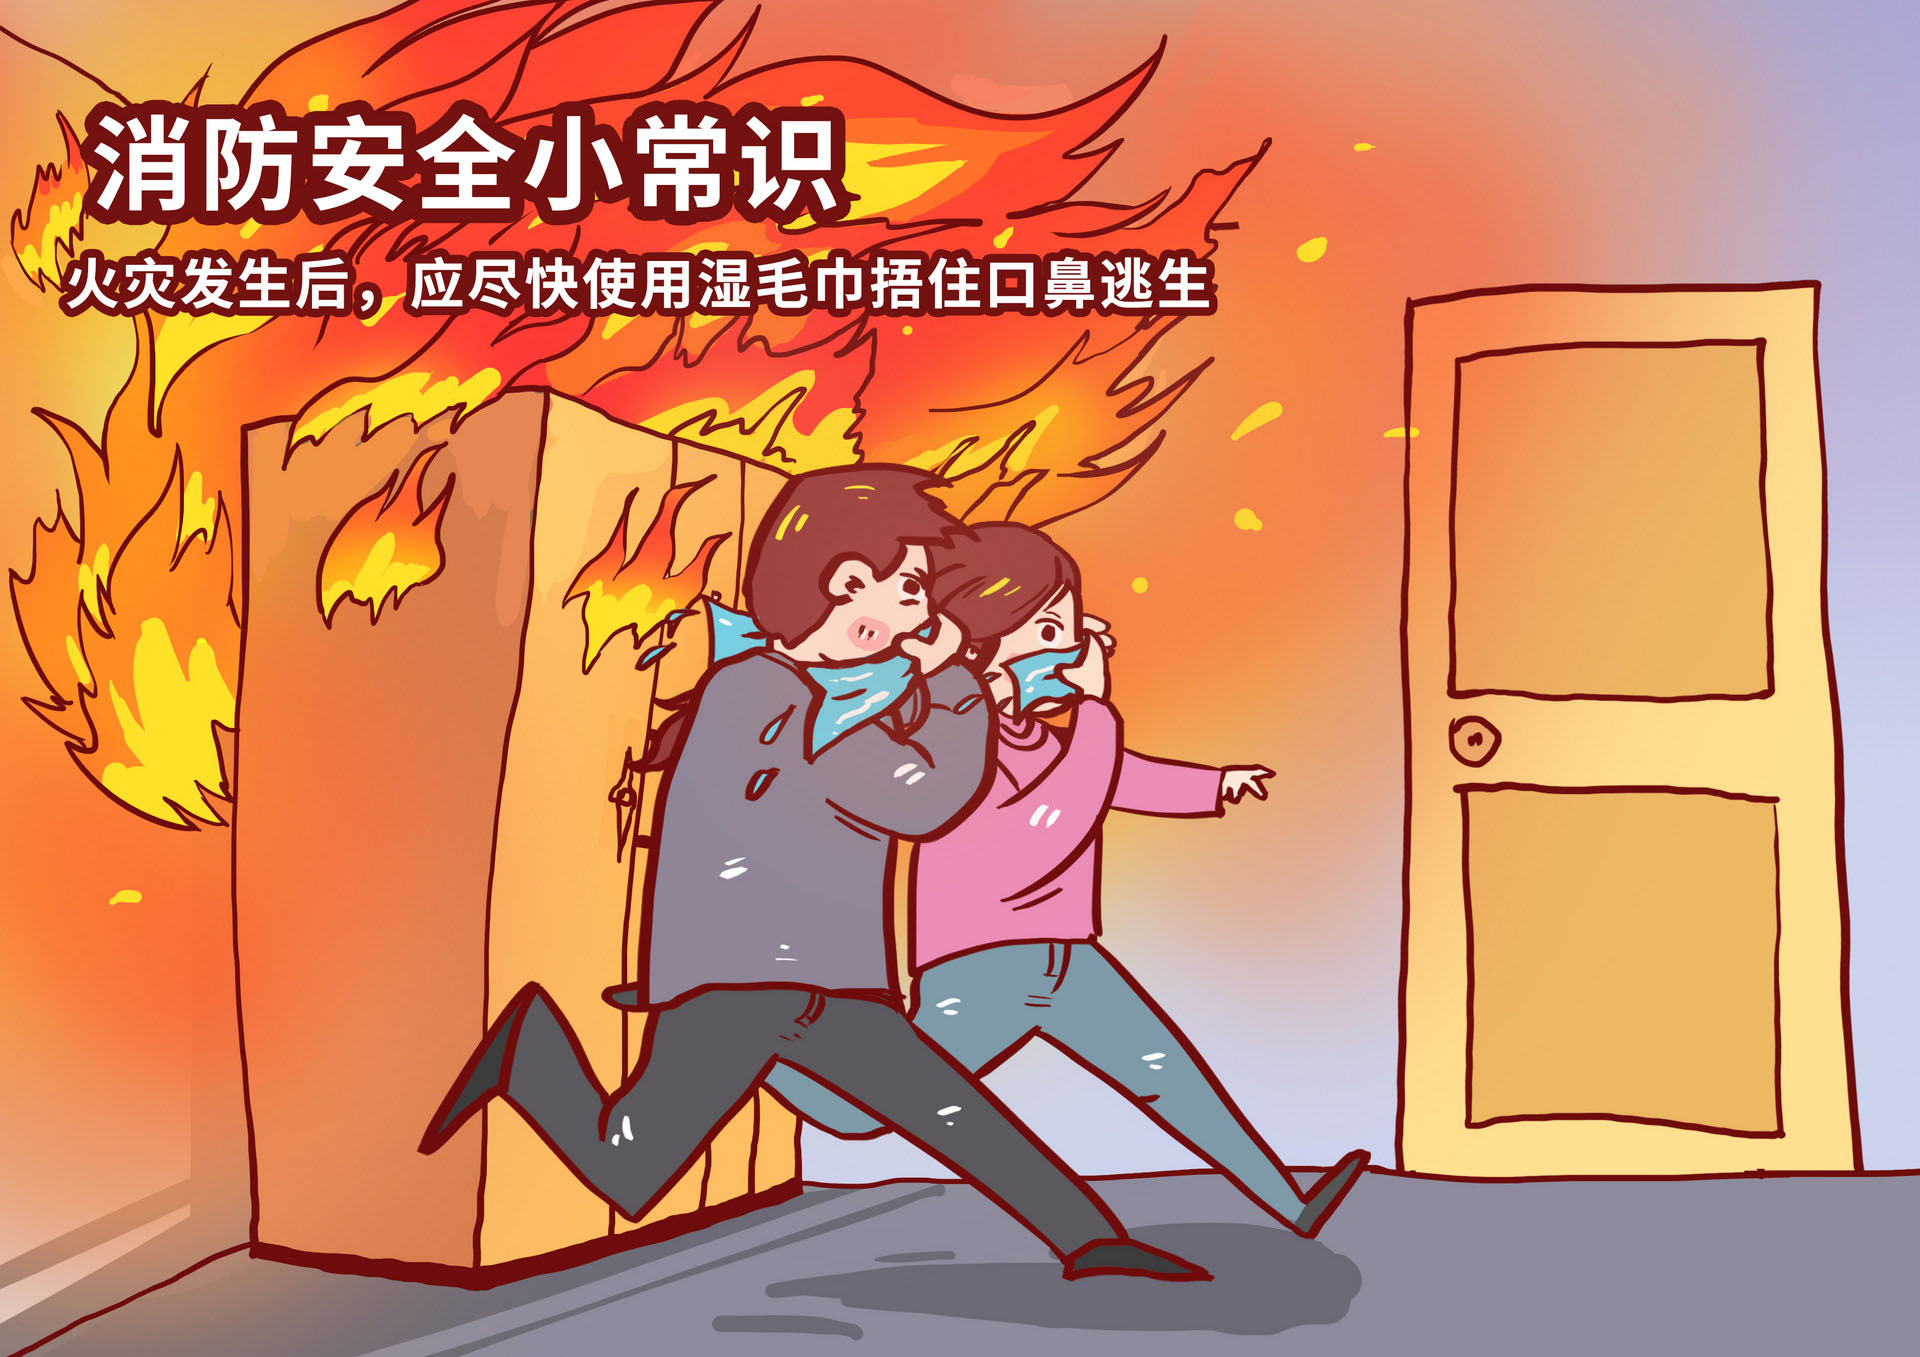 安全知识—火灾逃生_重庆市应急管理局